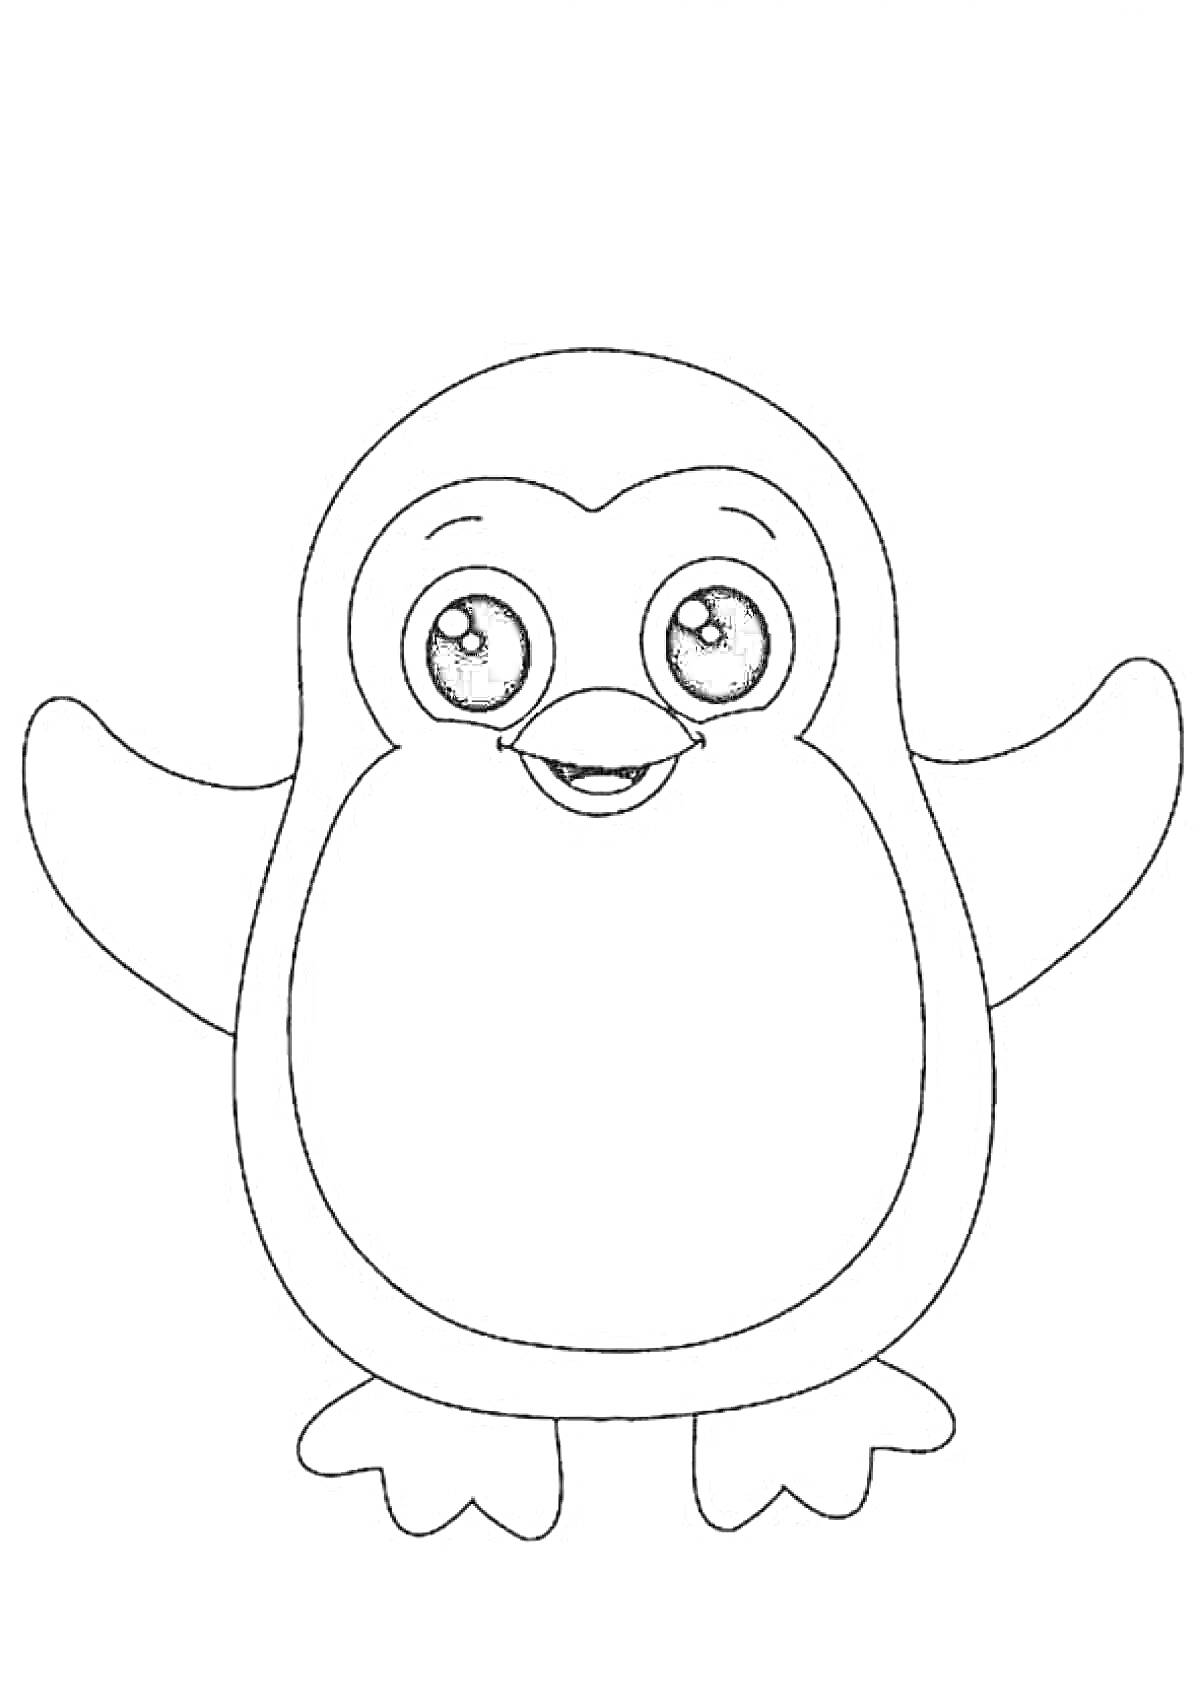 Раскраска Пингвин с большими глазами для малышей